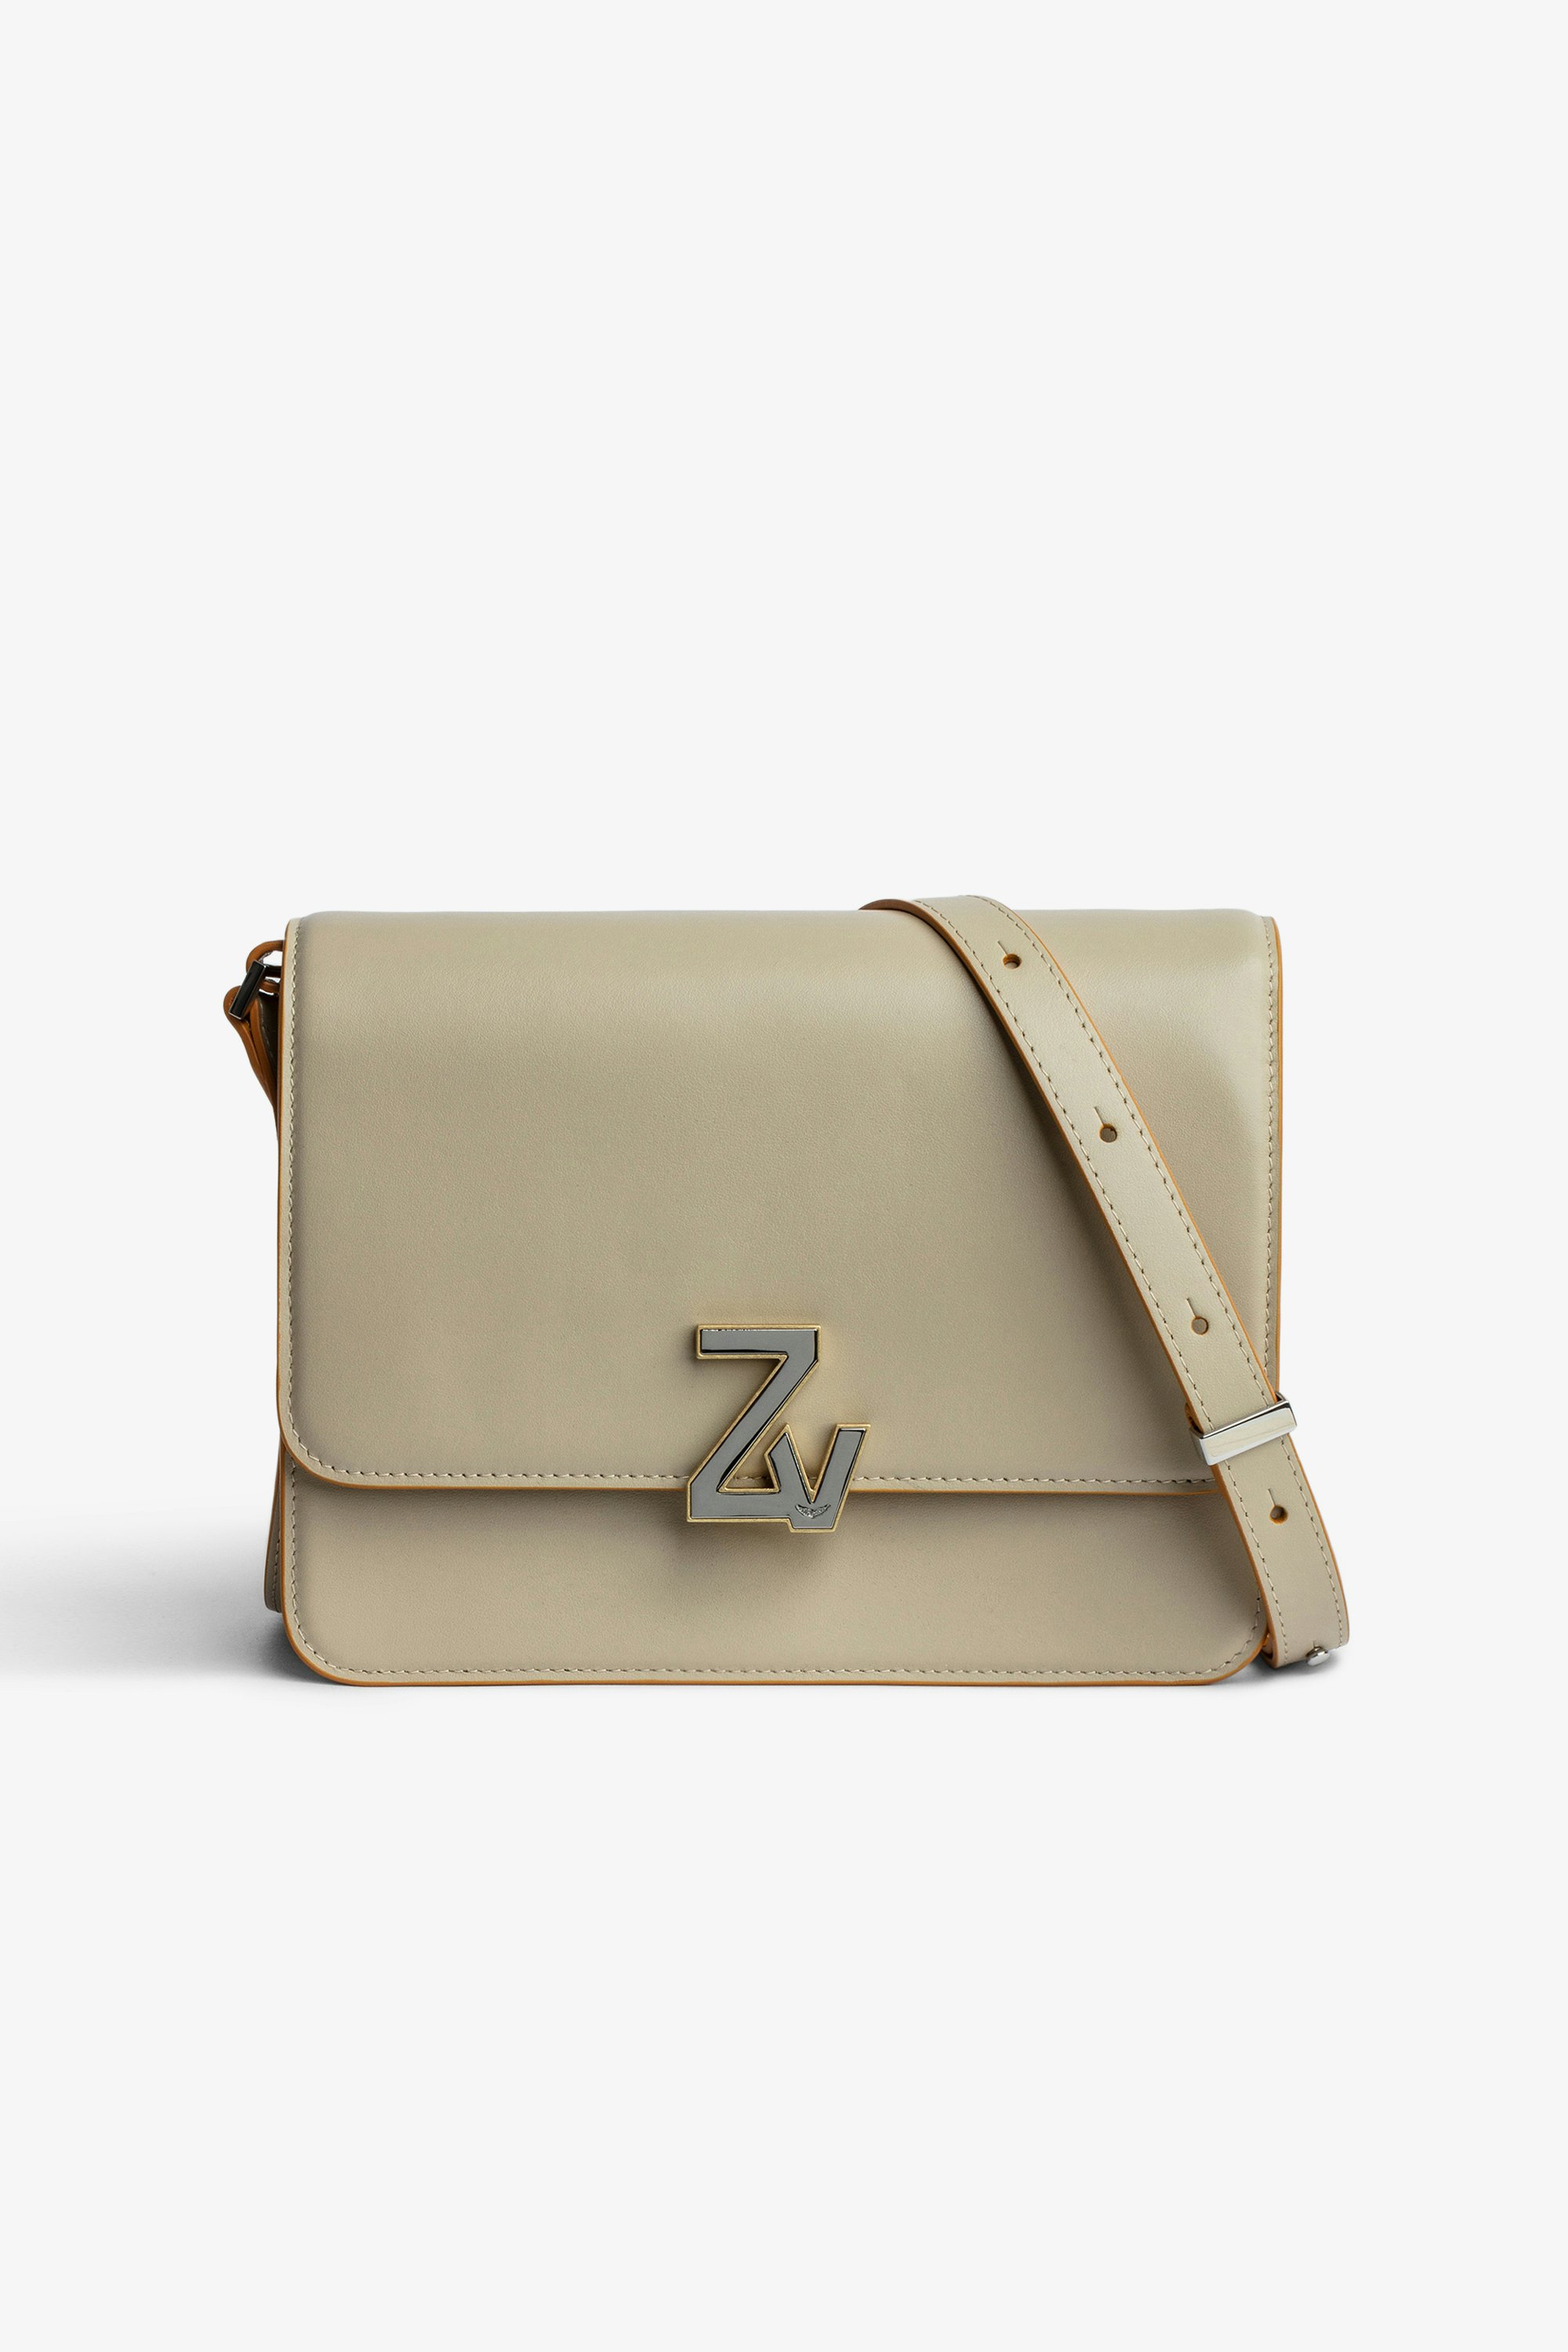 Tasche ZV Initiale Le City Damentasche aus beigefarbenem Glattleder mit Klappe mit ZV-Verschluss und Schulterriemen